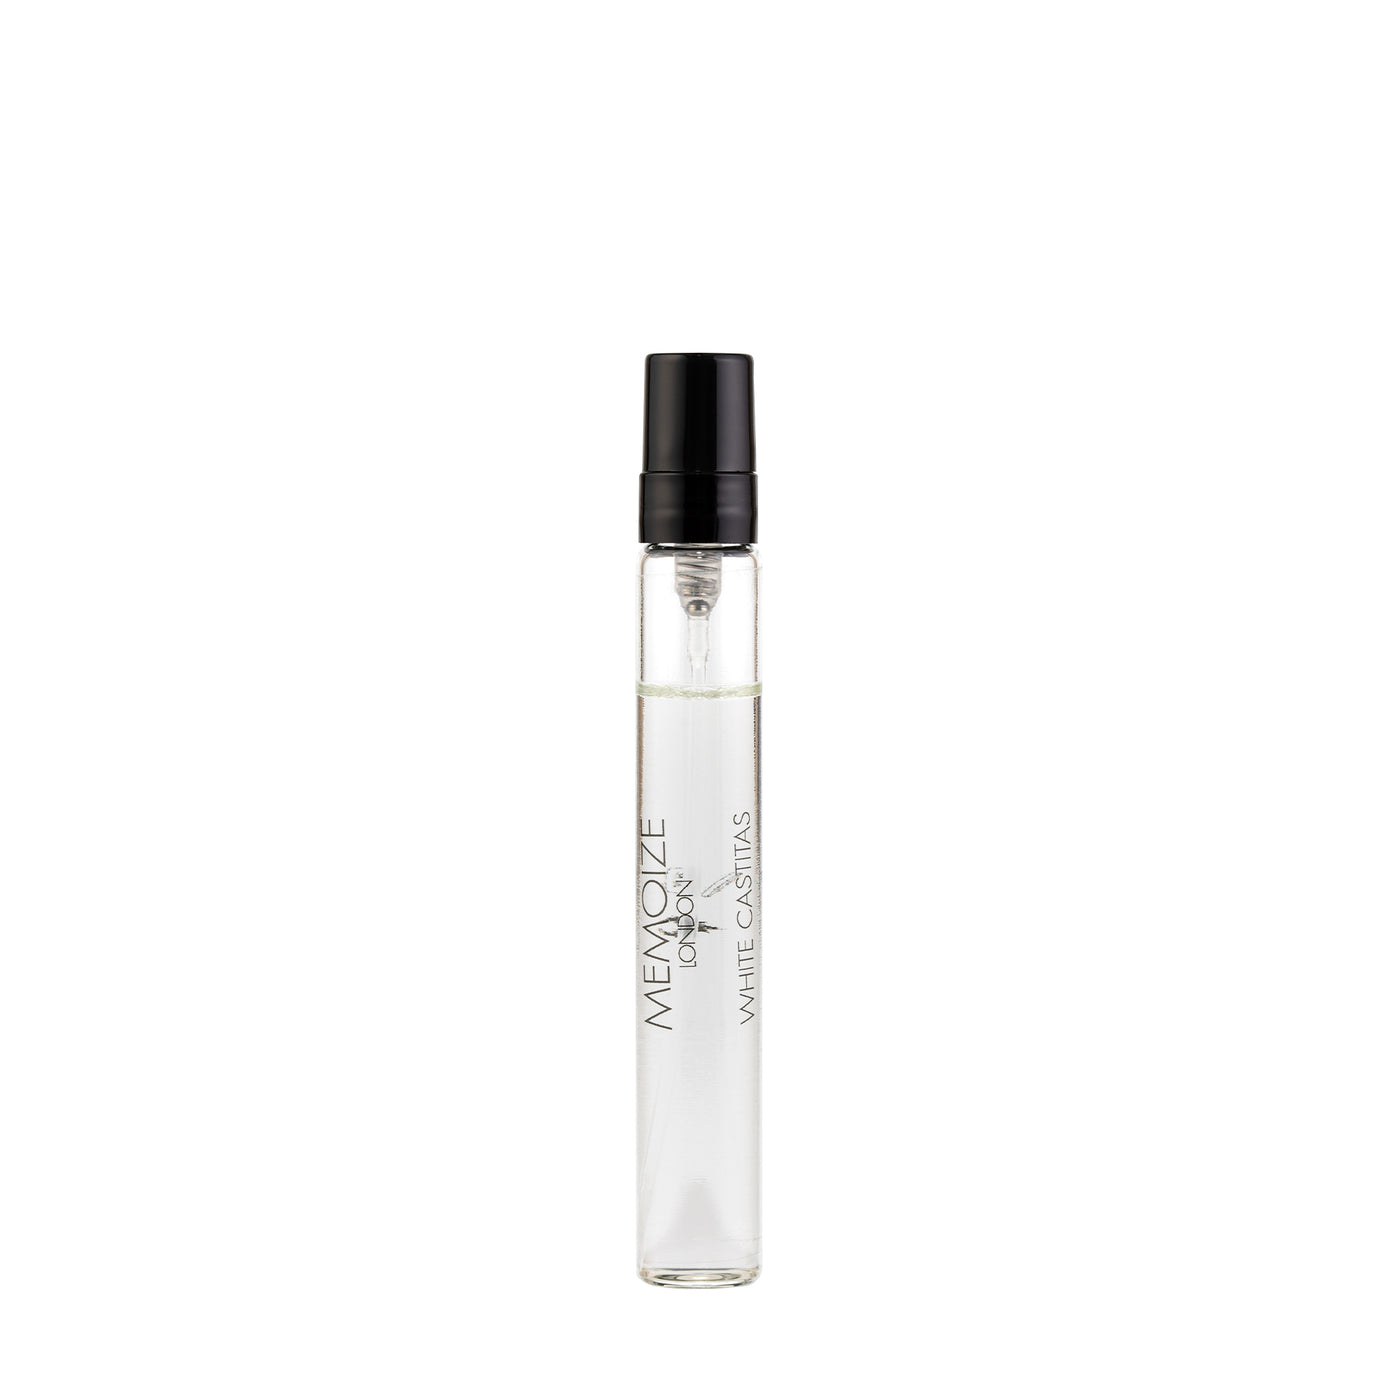 Memoize London WHITE CASTITAS Extait de Parfum 7.5ml